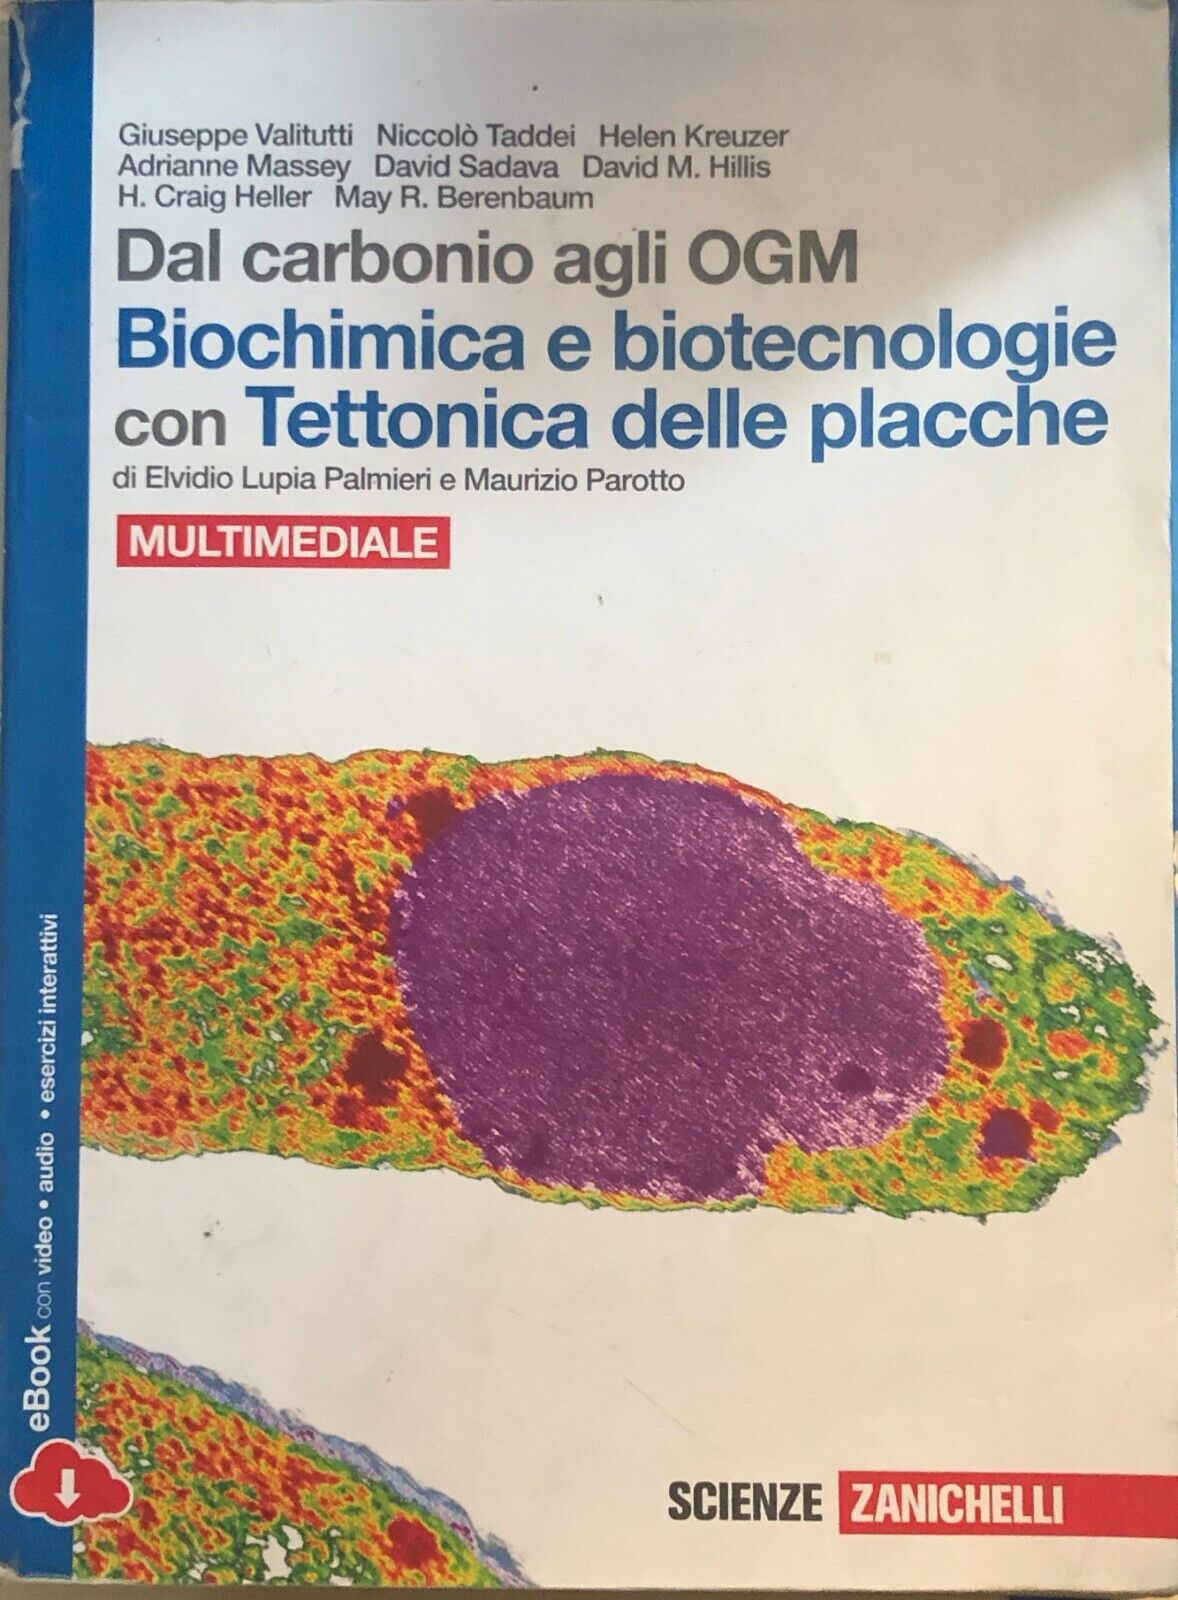 Biochimica e biotecnologie con Tettonica delle placche di AA.VV., 2014, Zanichel